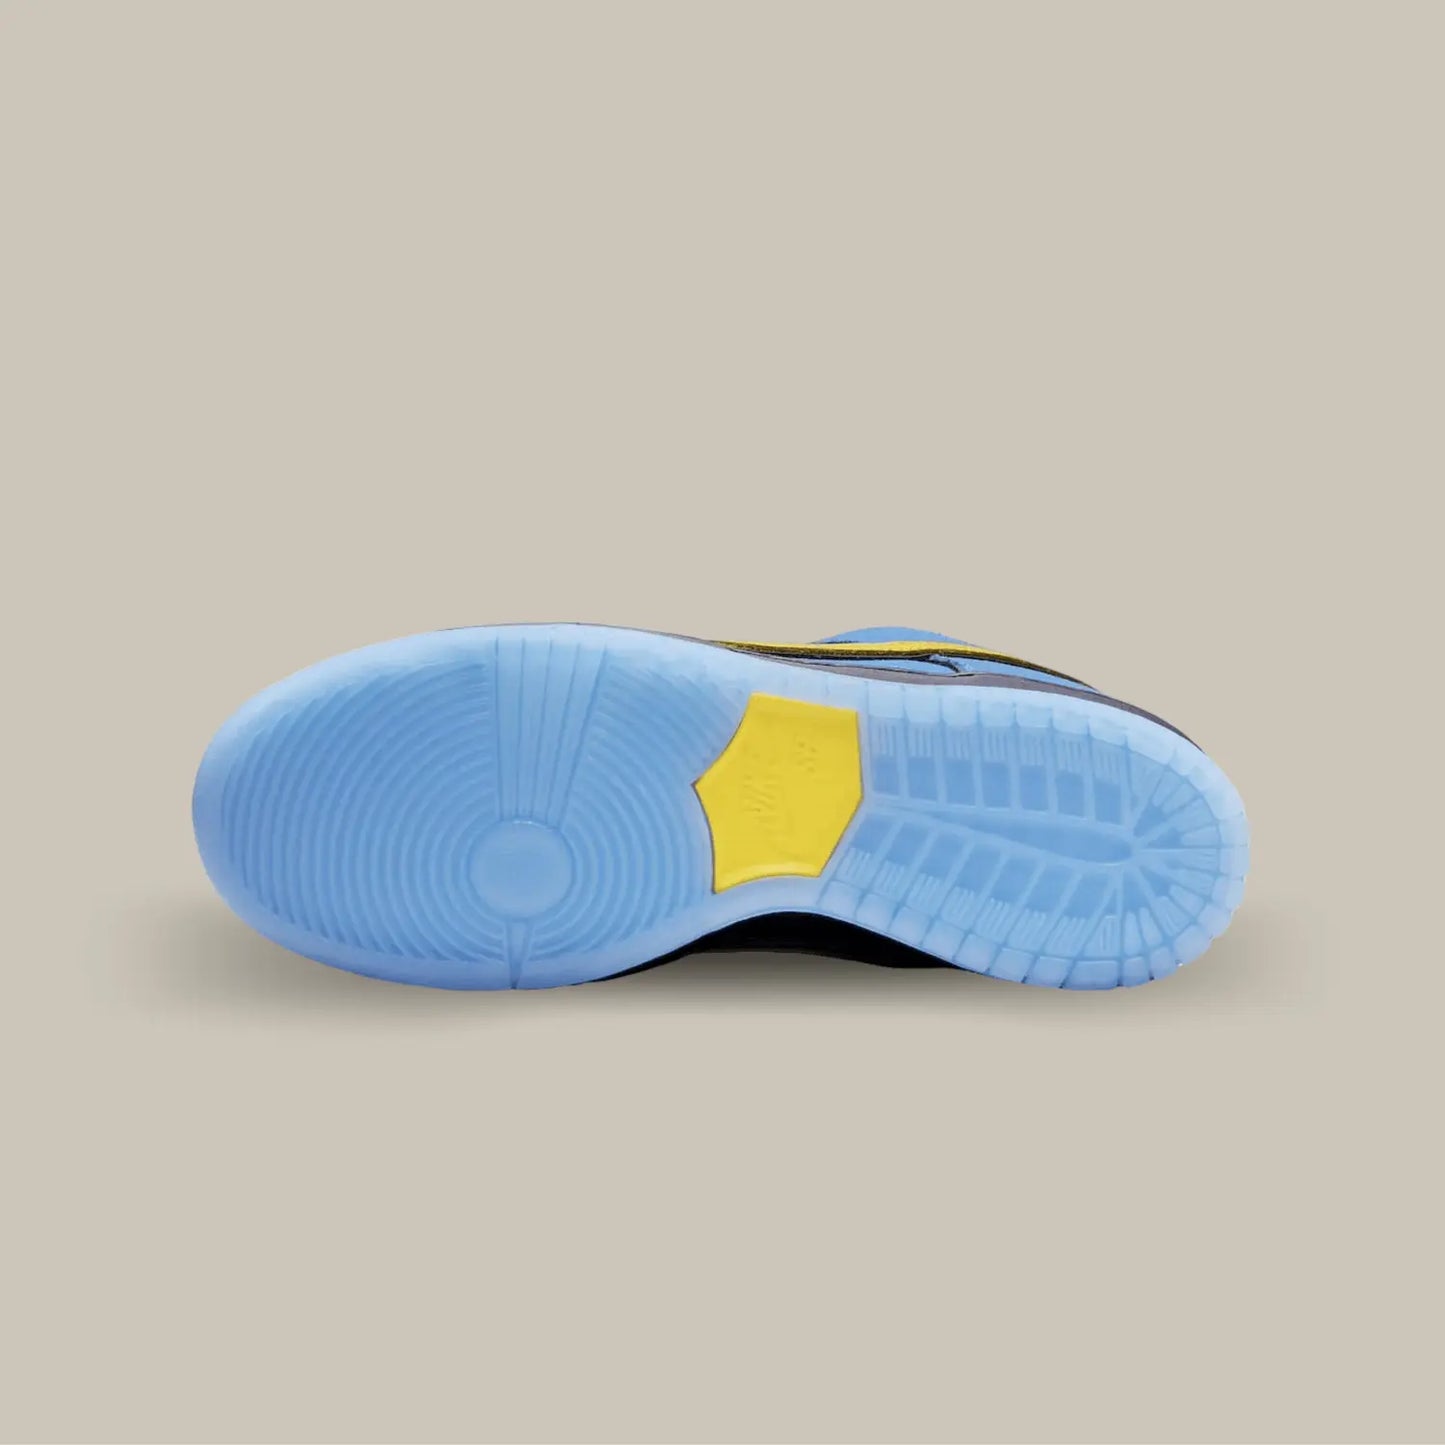 La semelle de la  Nike SB Dunk Low The powerpuff Bubbles de couleur bleu avec l'empiècement central jaune.